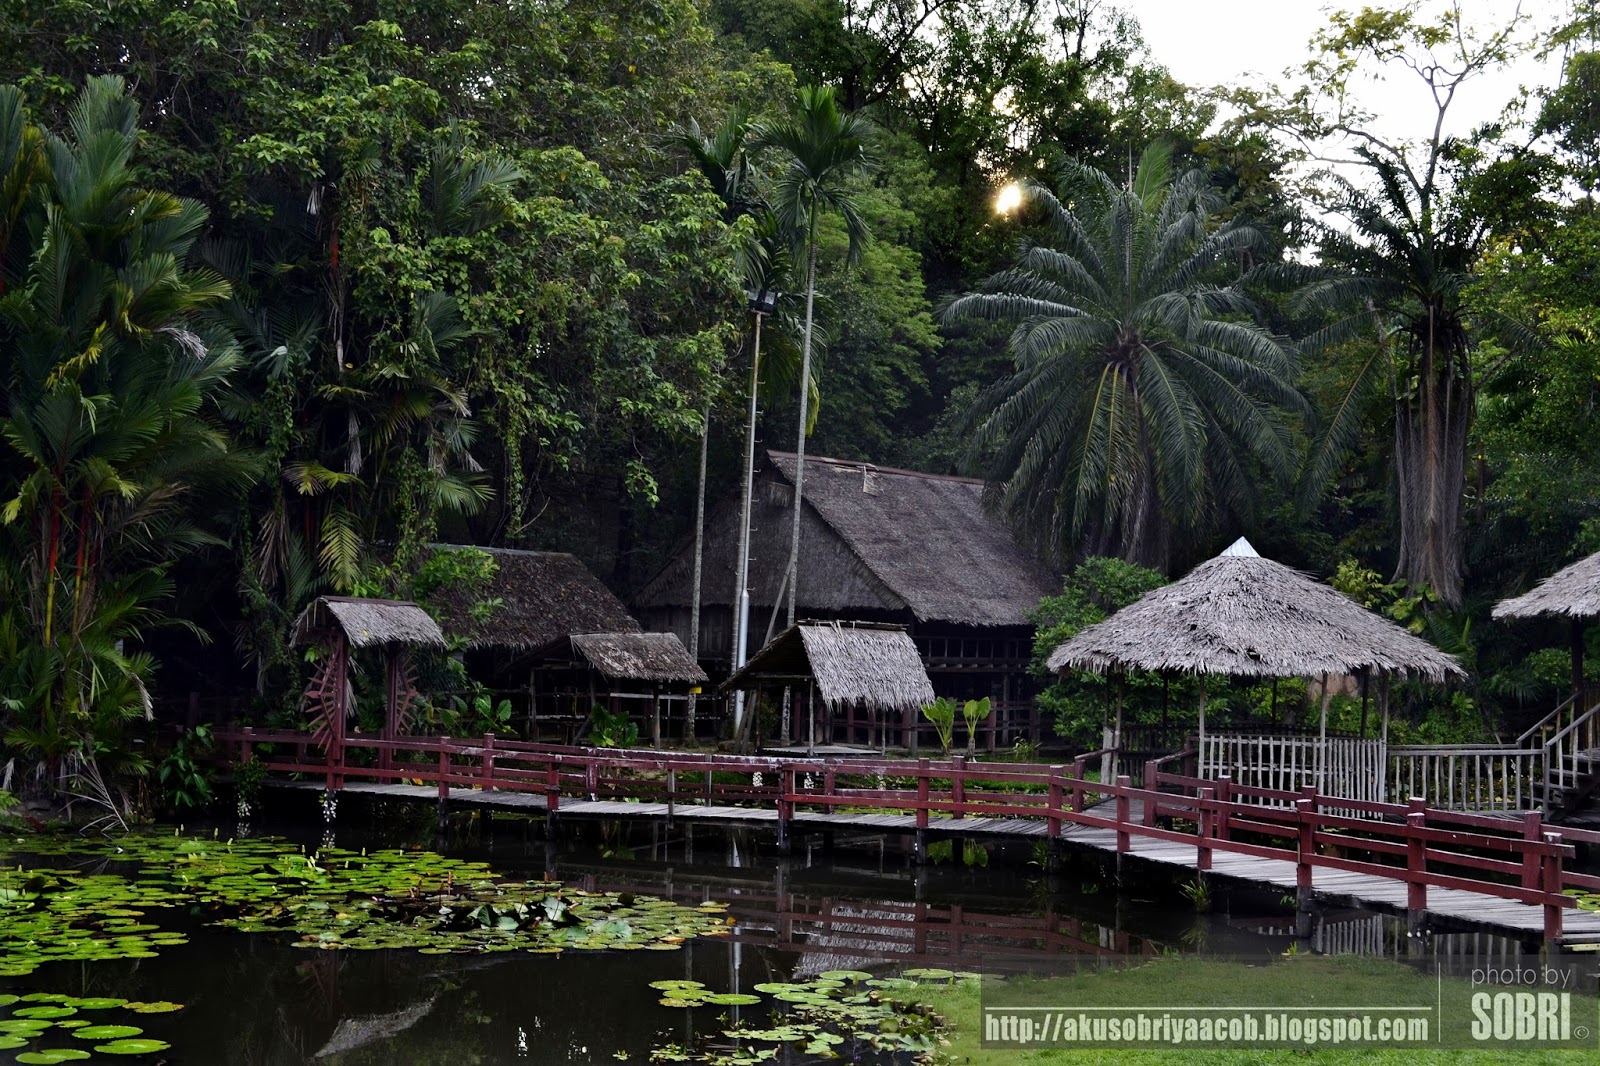 Tempat Menarik: Muzium Sabah, Kota Kinabalu, Sabah, Malaysia | www